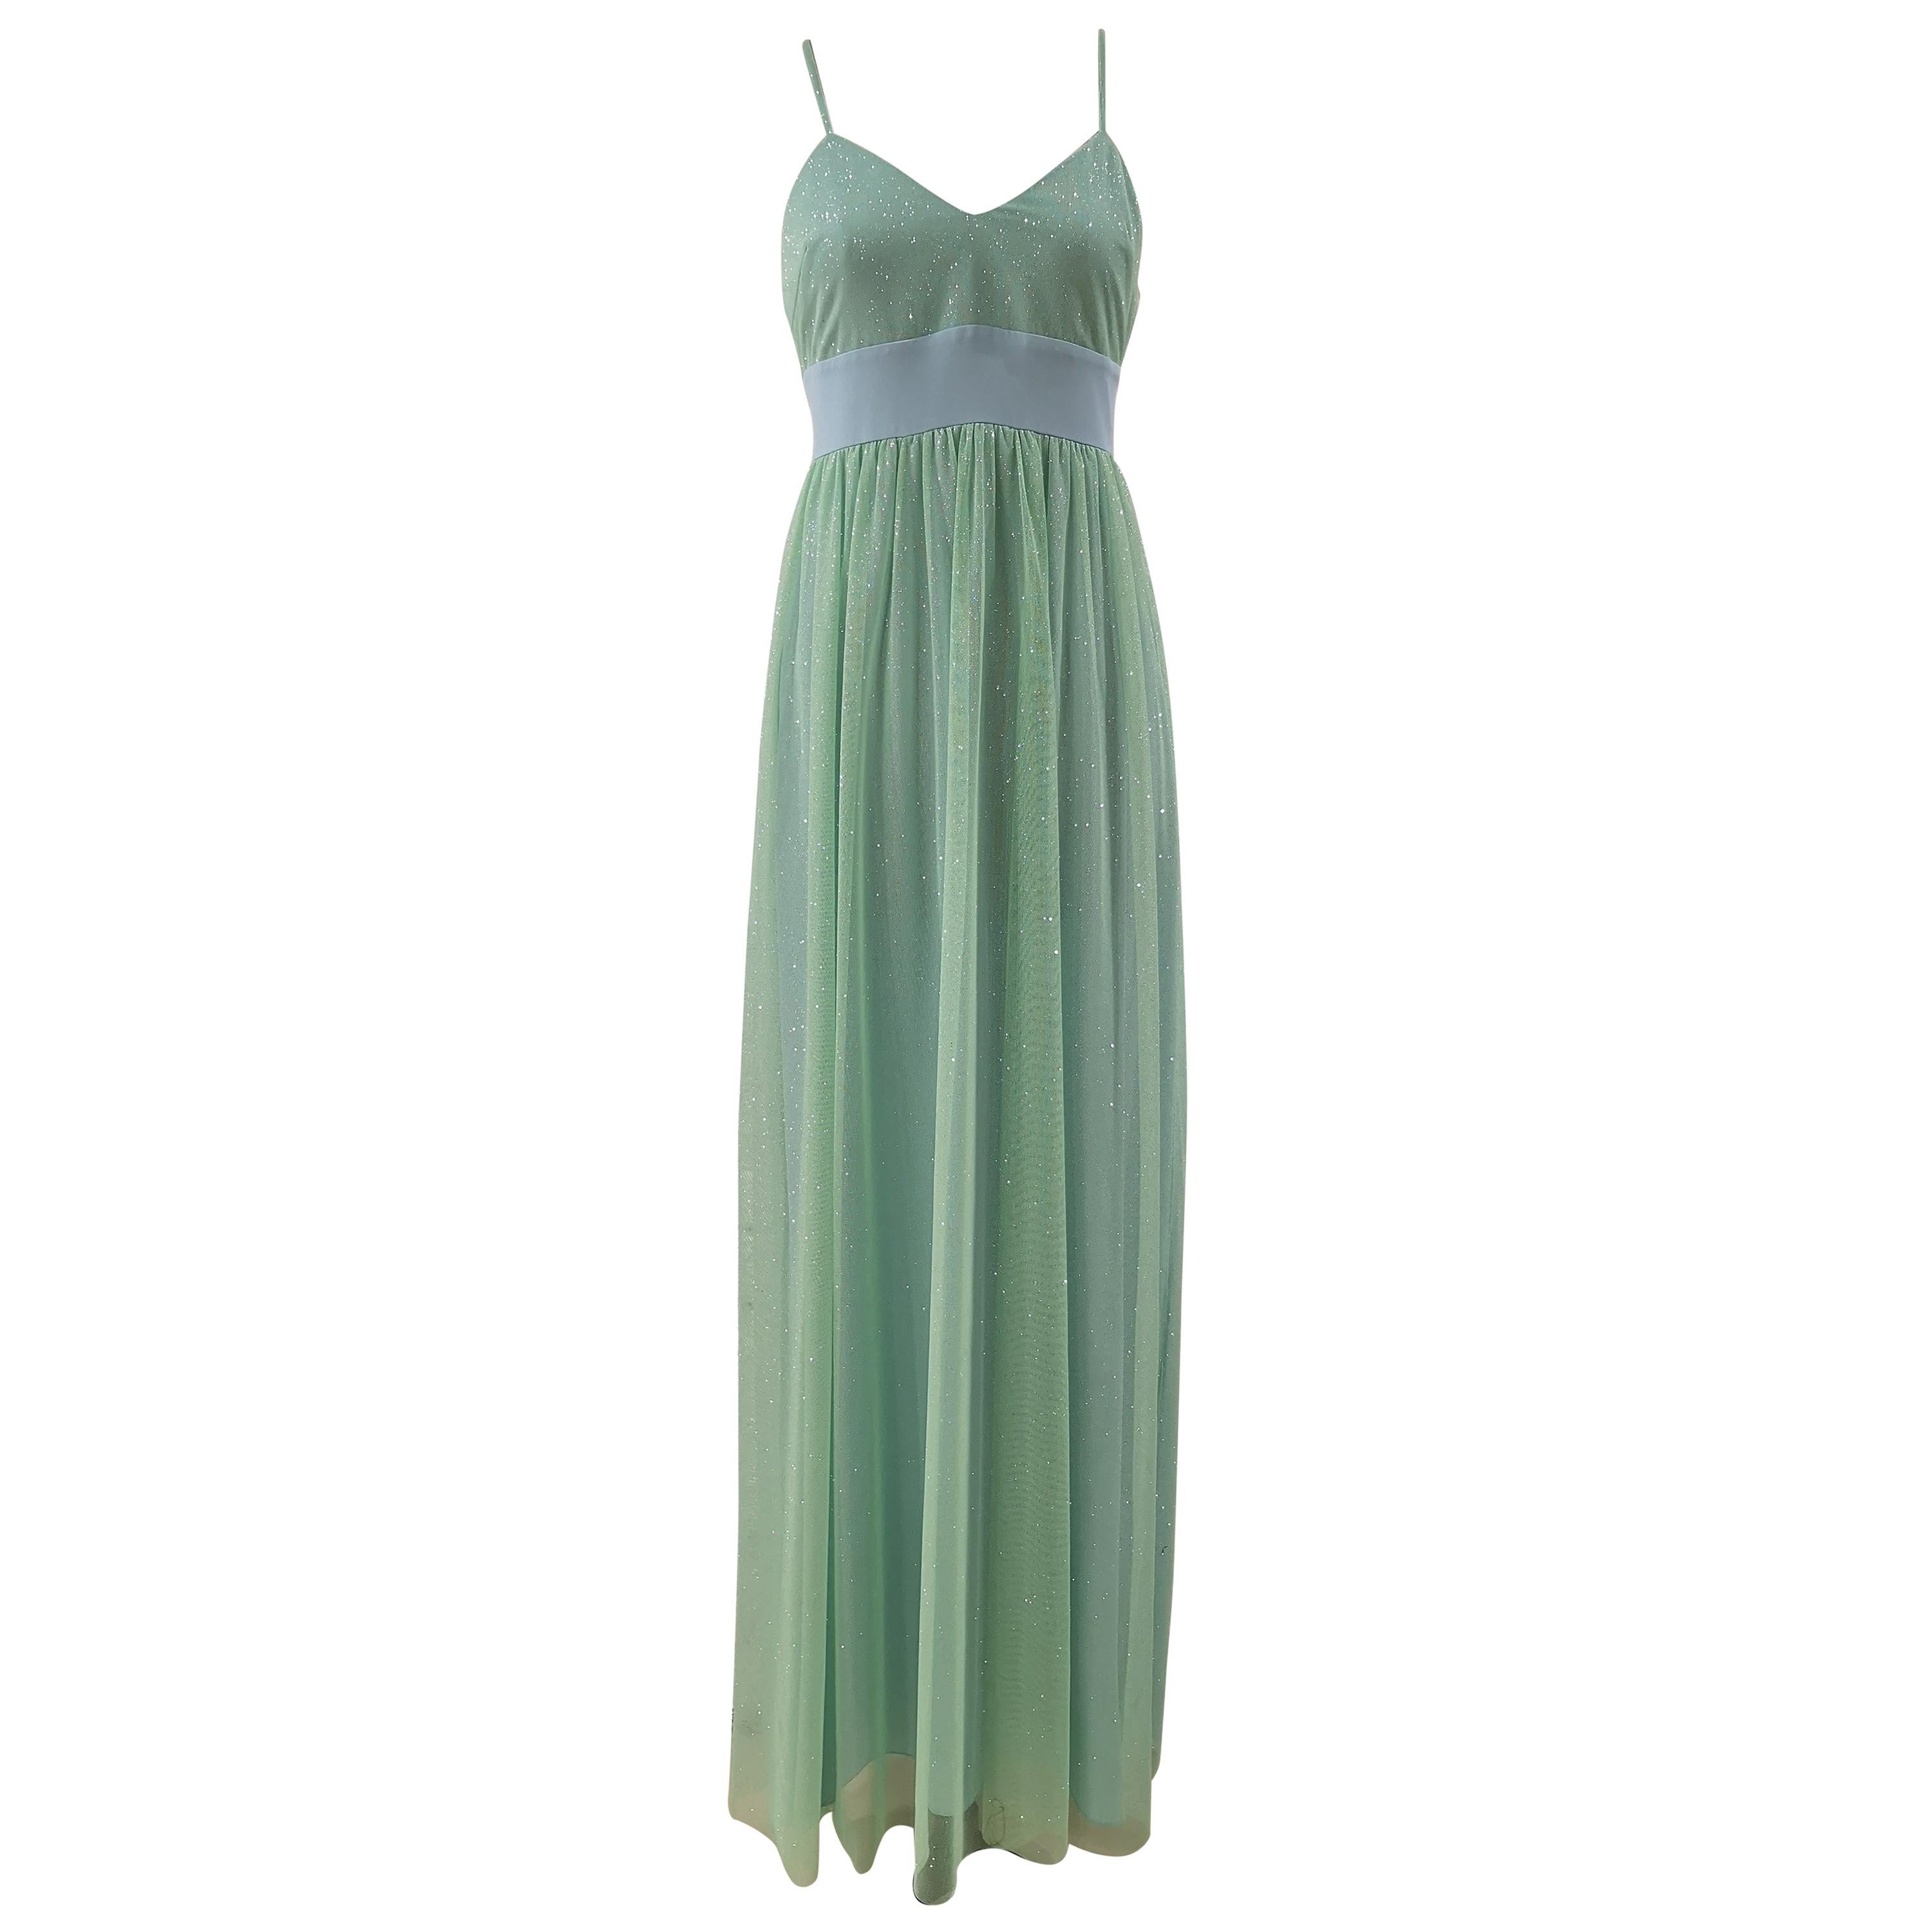 Chelidonia green glitter long dress